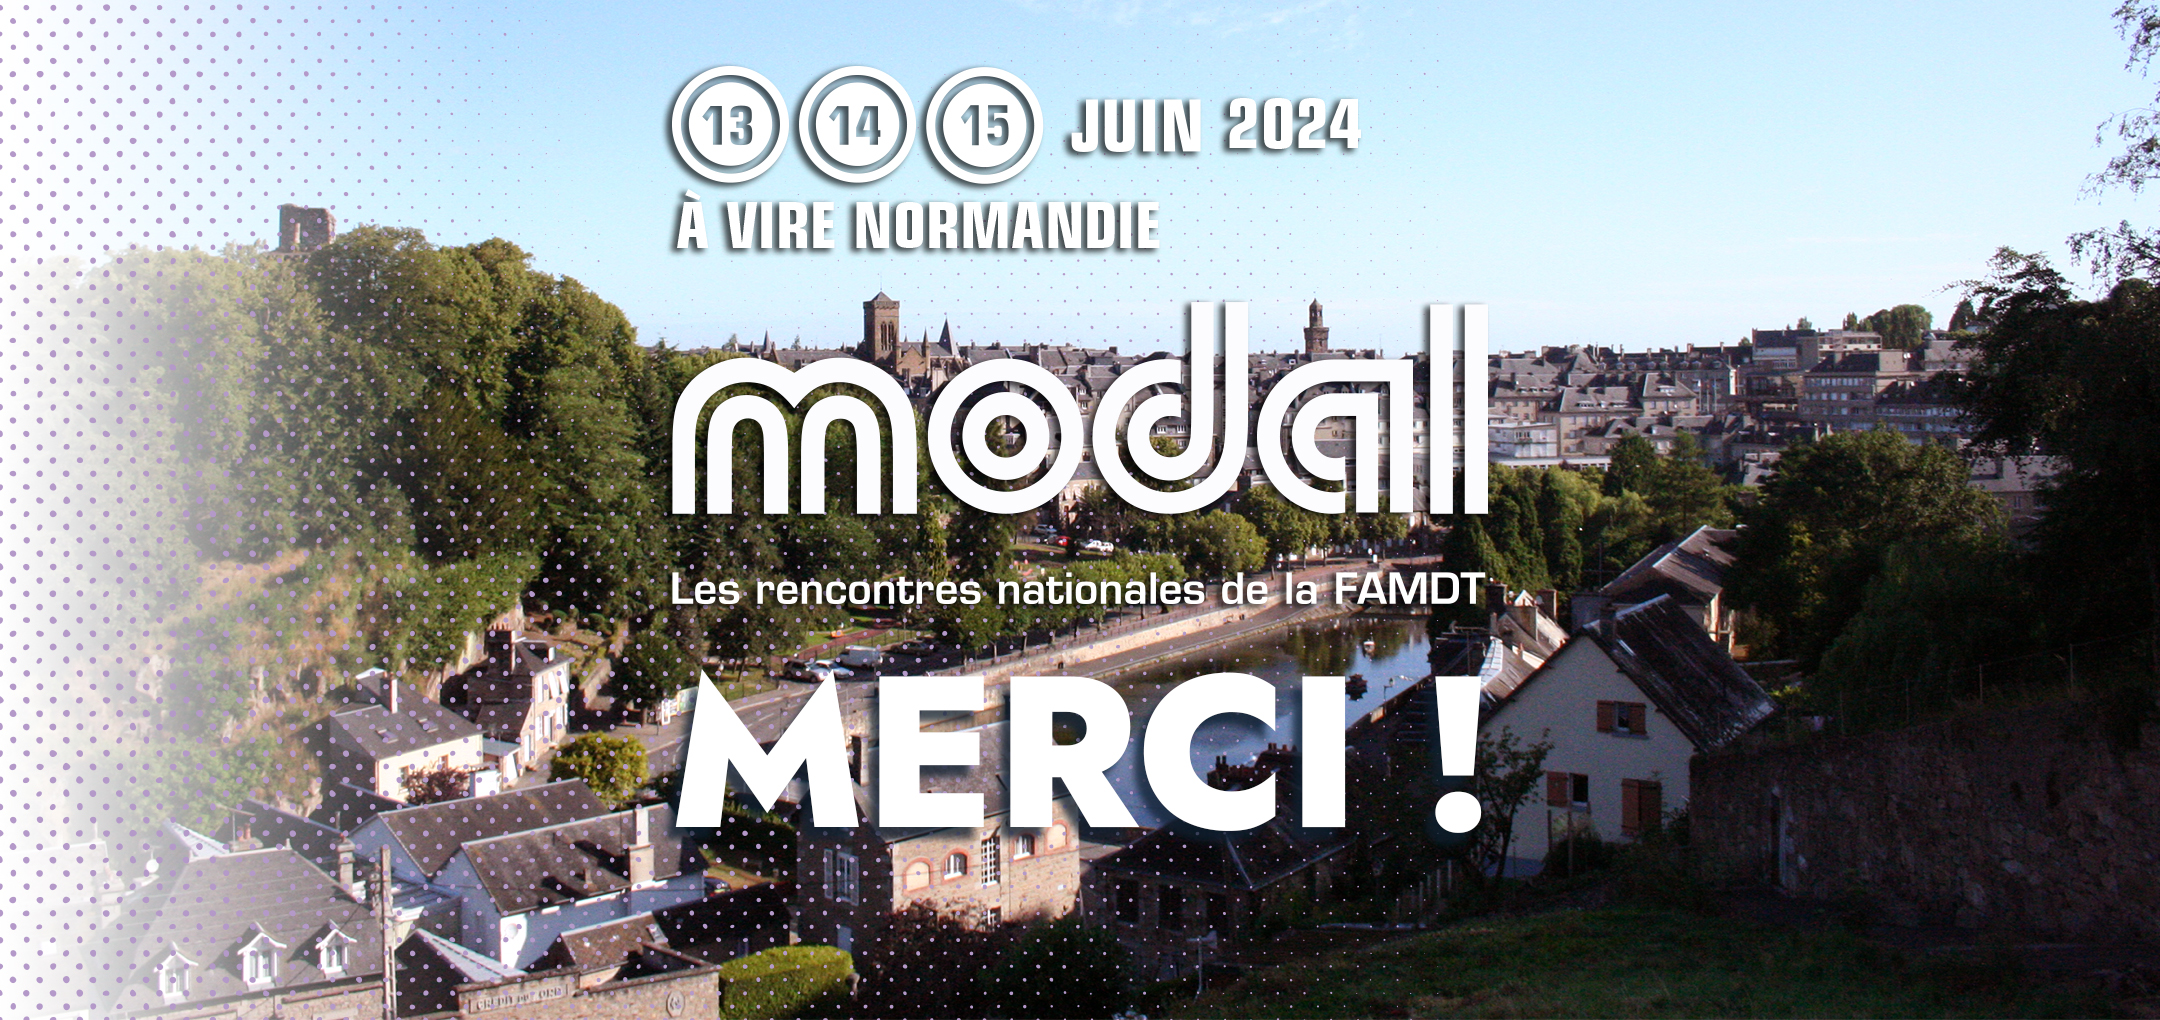 Lire la suite à propos de l’article Communiqué de sortie de MODAL – Les rencontres à Vire Normandie